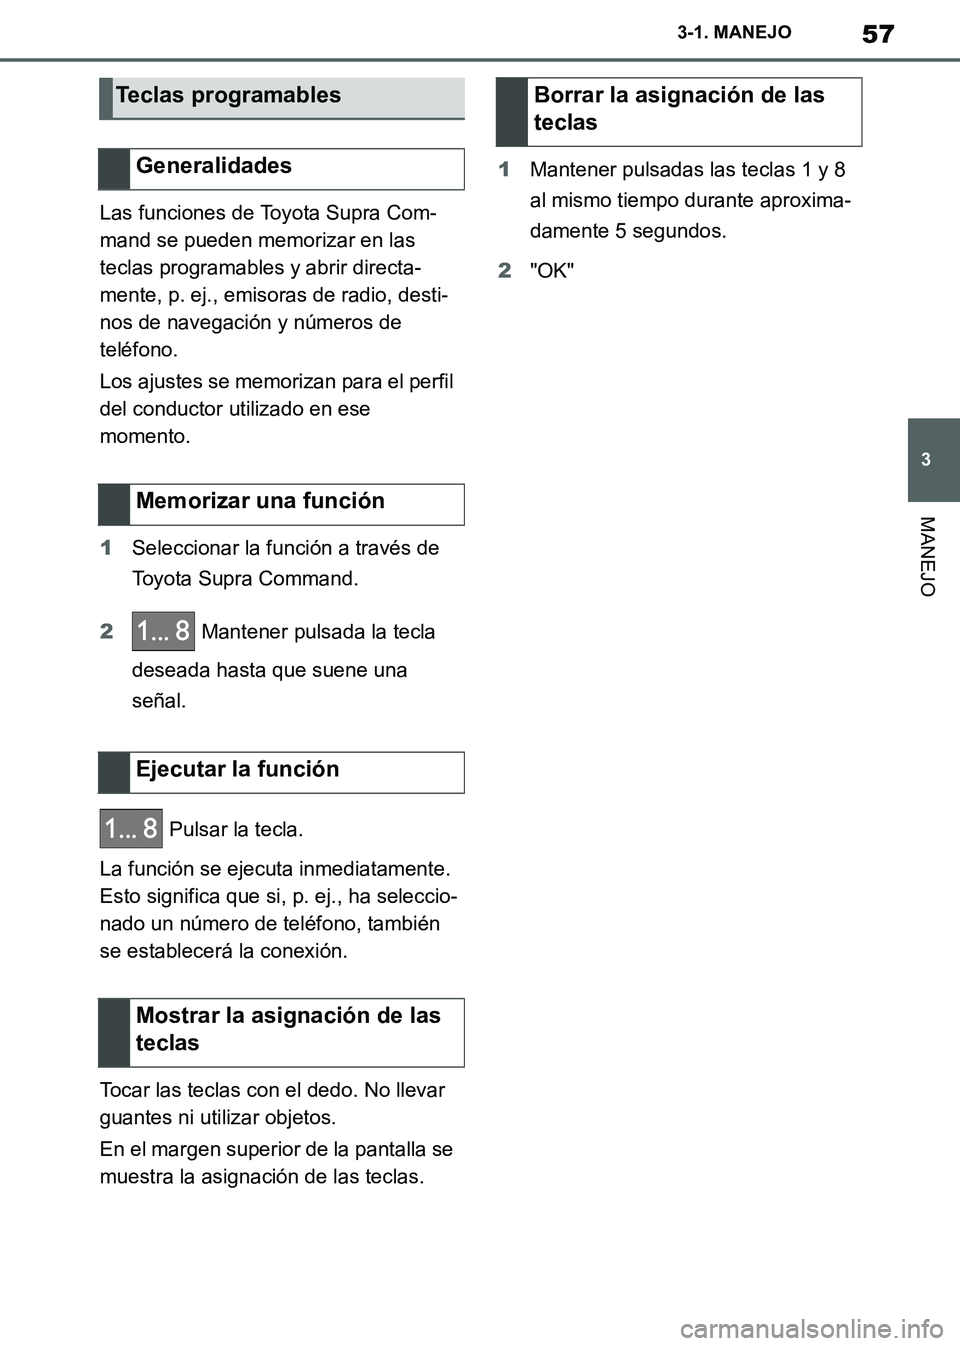 TOYOTA SUPRA 2019  Manuale de Empleo (in Spanish) 57
3
Supra Owners Manual_ES
3-1. MANEJO
MANEJO
Las funciones de Toyota Supra Com-
mand se pueden memorizar en las 
teclas programables y abrir directa-
mente, p. ej., emisoras de radio, desti-
nos de